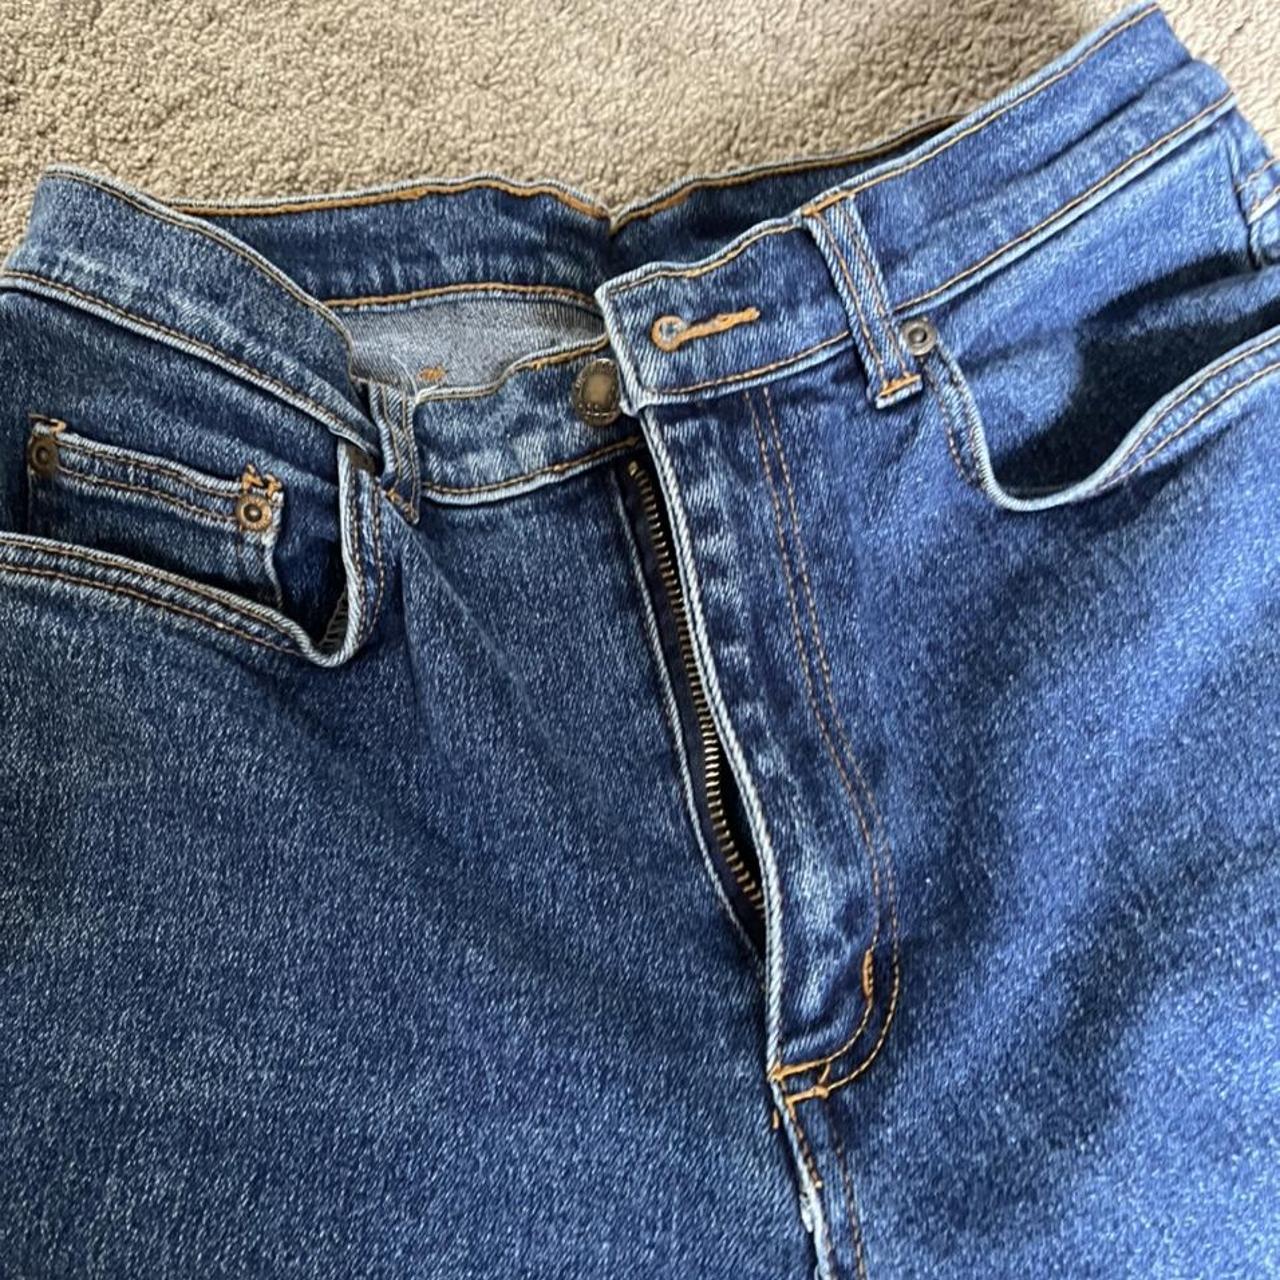 BLUE RIDGE vintage 90s jeans!! excellent condition,... - Depop